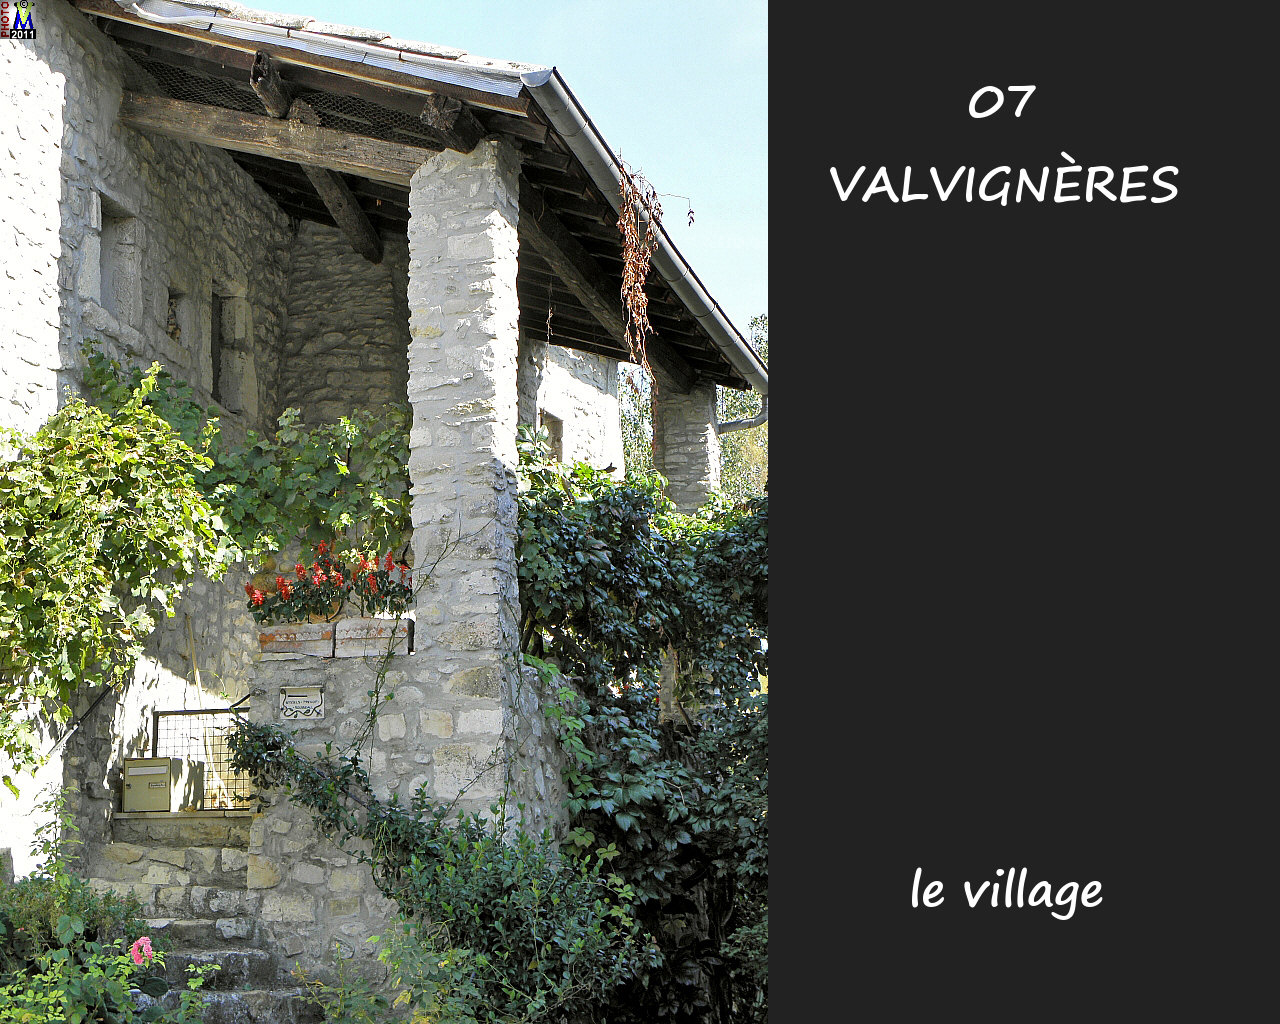 07VALVIGNERES_village_136.jpg